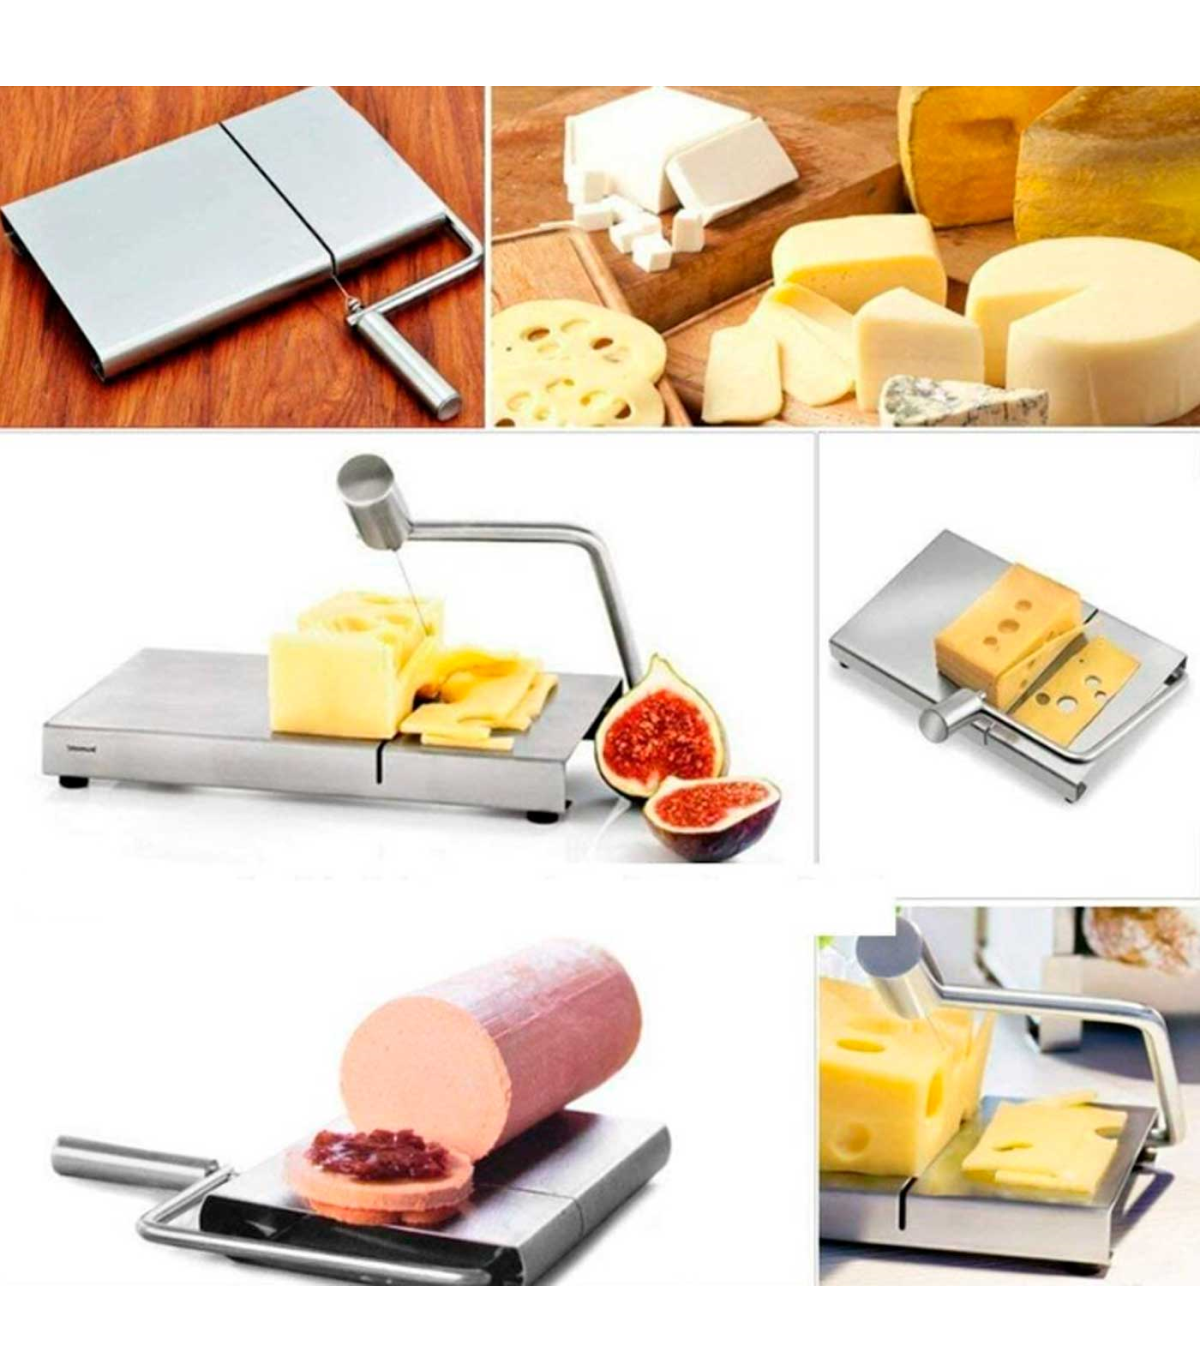 https://tradineur.com/83333-superlarge_default/tradineur--cortador-de-queso-manual-guillotina-de-acero-inoxidable-incluye-5-hilos-de-repuesto-corte-ajustable-cortar-mantequill.jpg